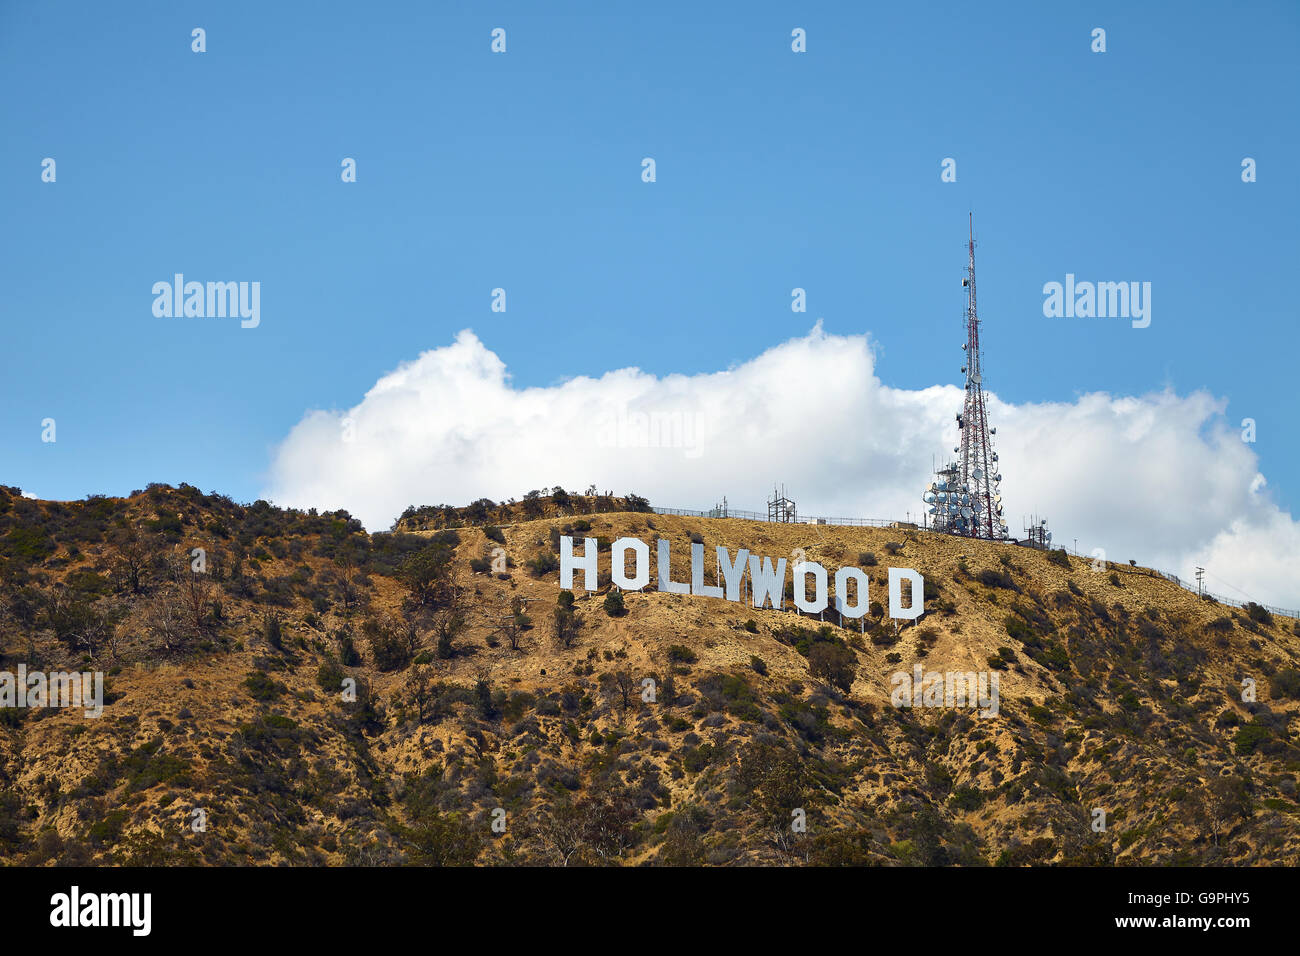 Hollywood sign, at LA, California on May 23 2016 Stock Photo